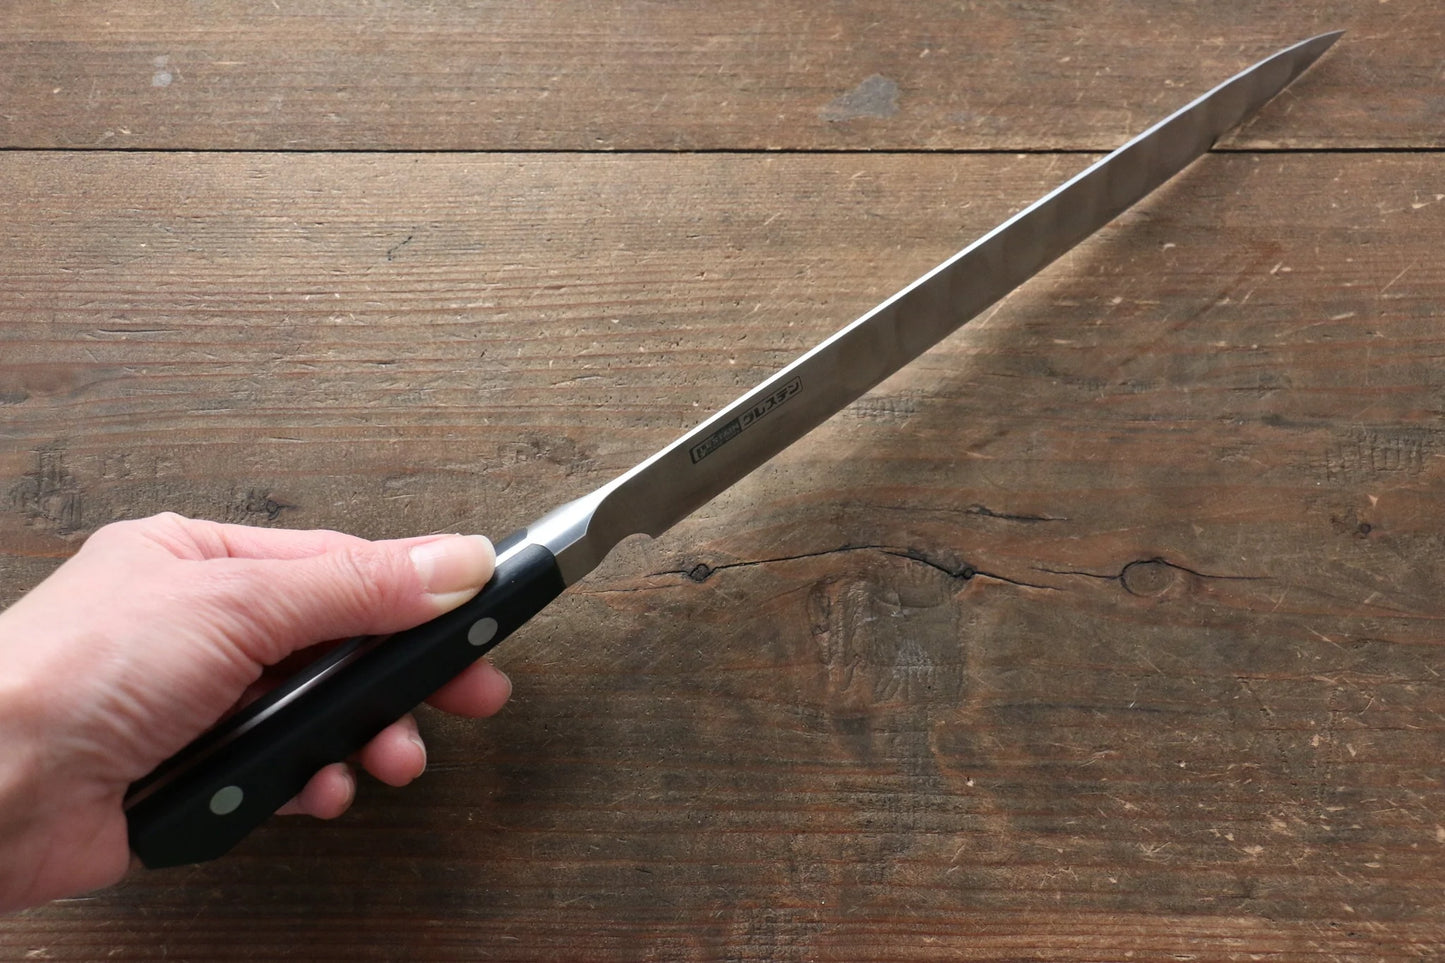 Marke Glestain Edelstahlmesser Proty japanisches Messer 